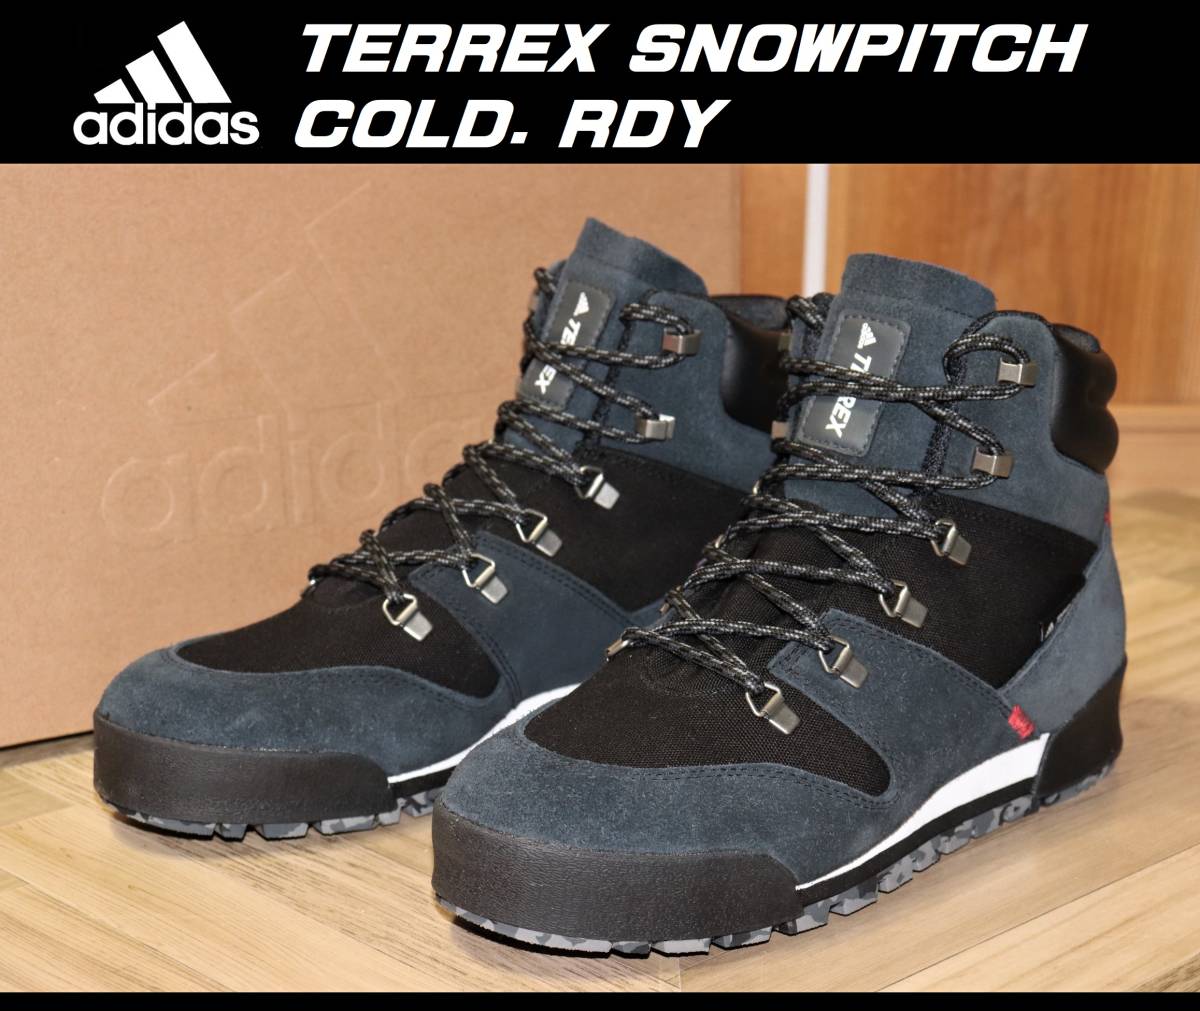 即決【未使用】 adidas ★ TERREX SNOWPITCH COLD. RDY US9.5/27.5cm ★ アディダス テレックス スノーピッチ ブーツ プリマロフト FV7957_画像1